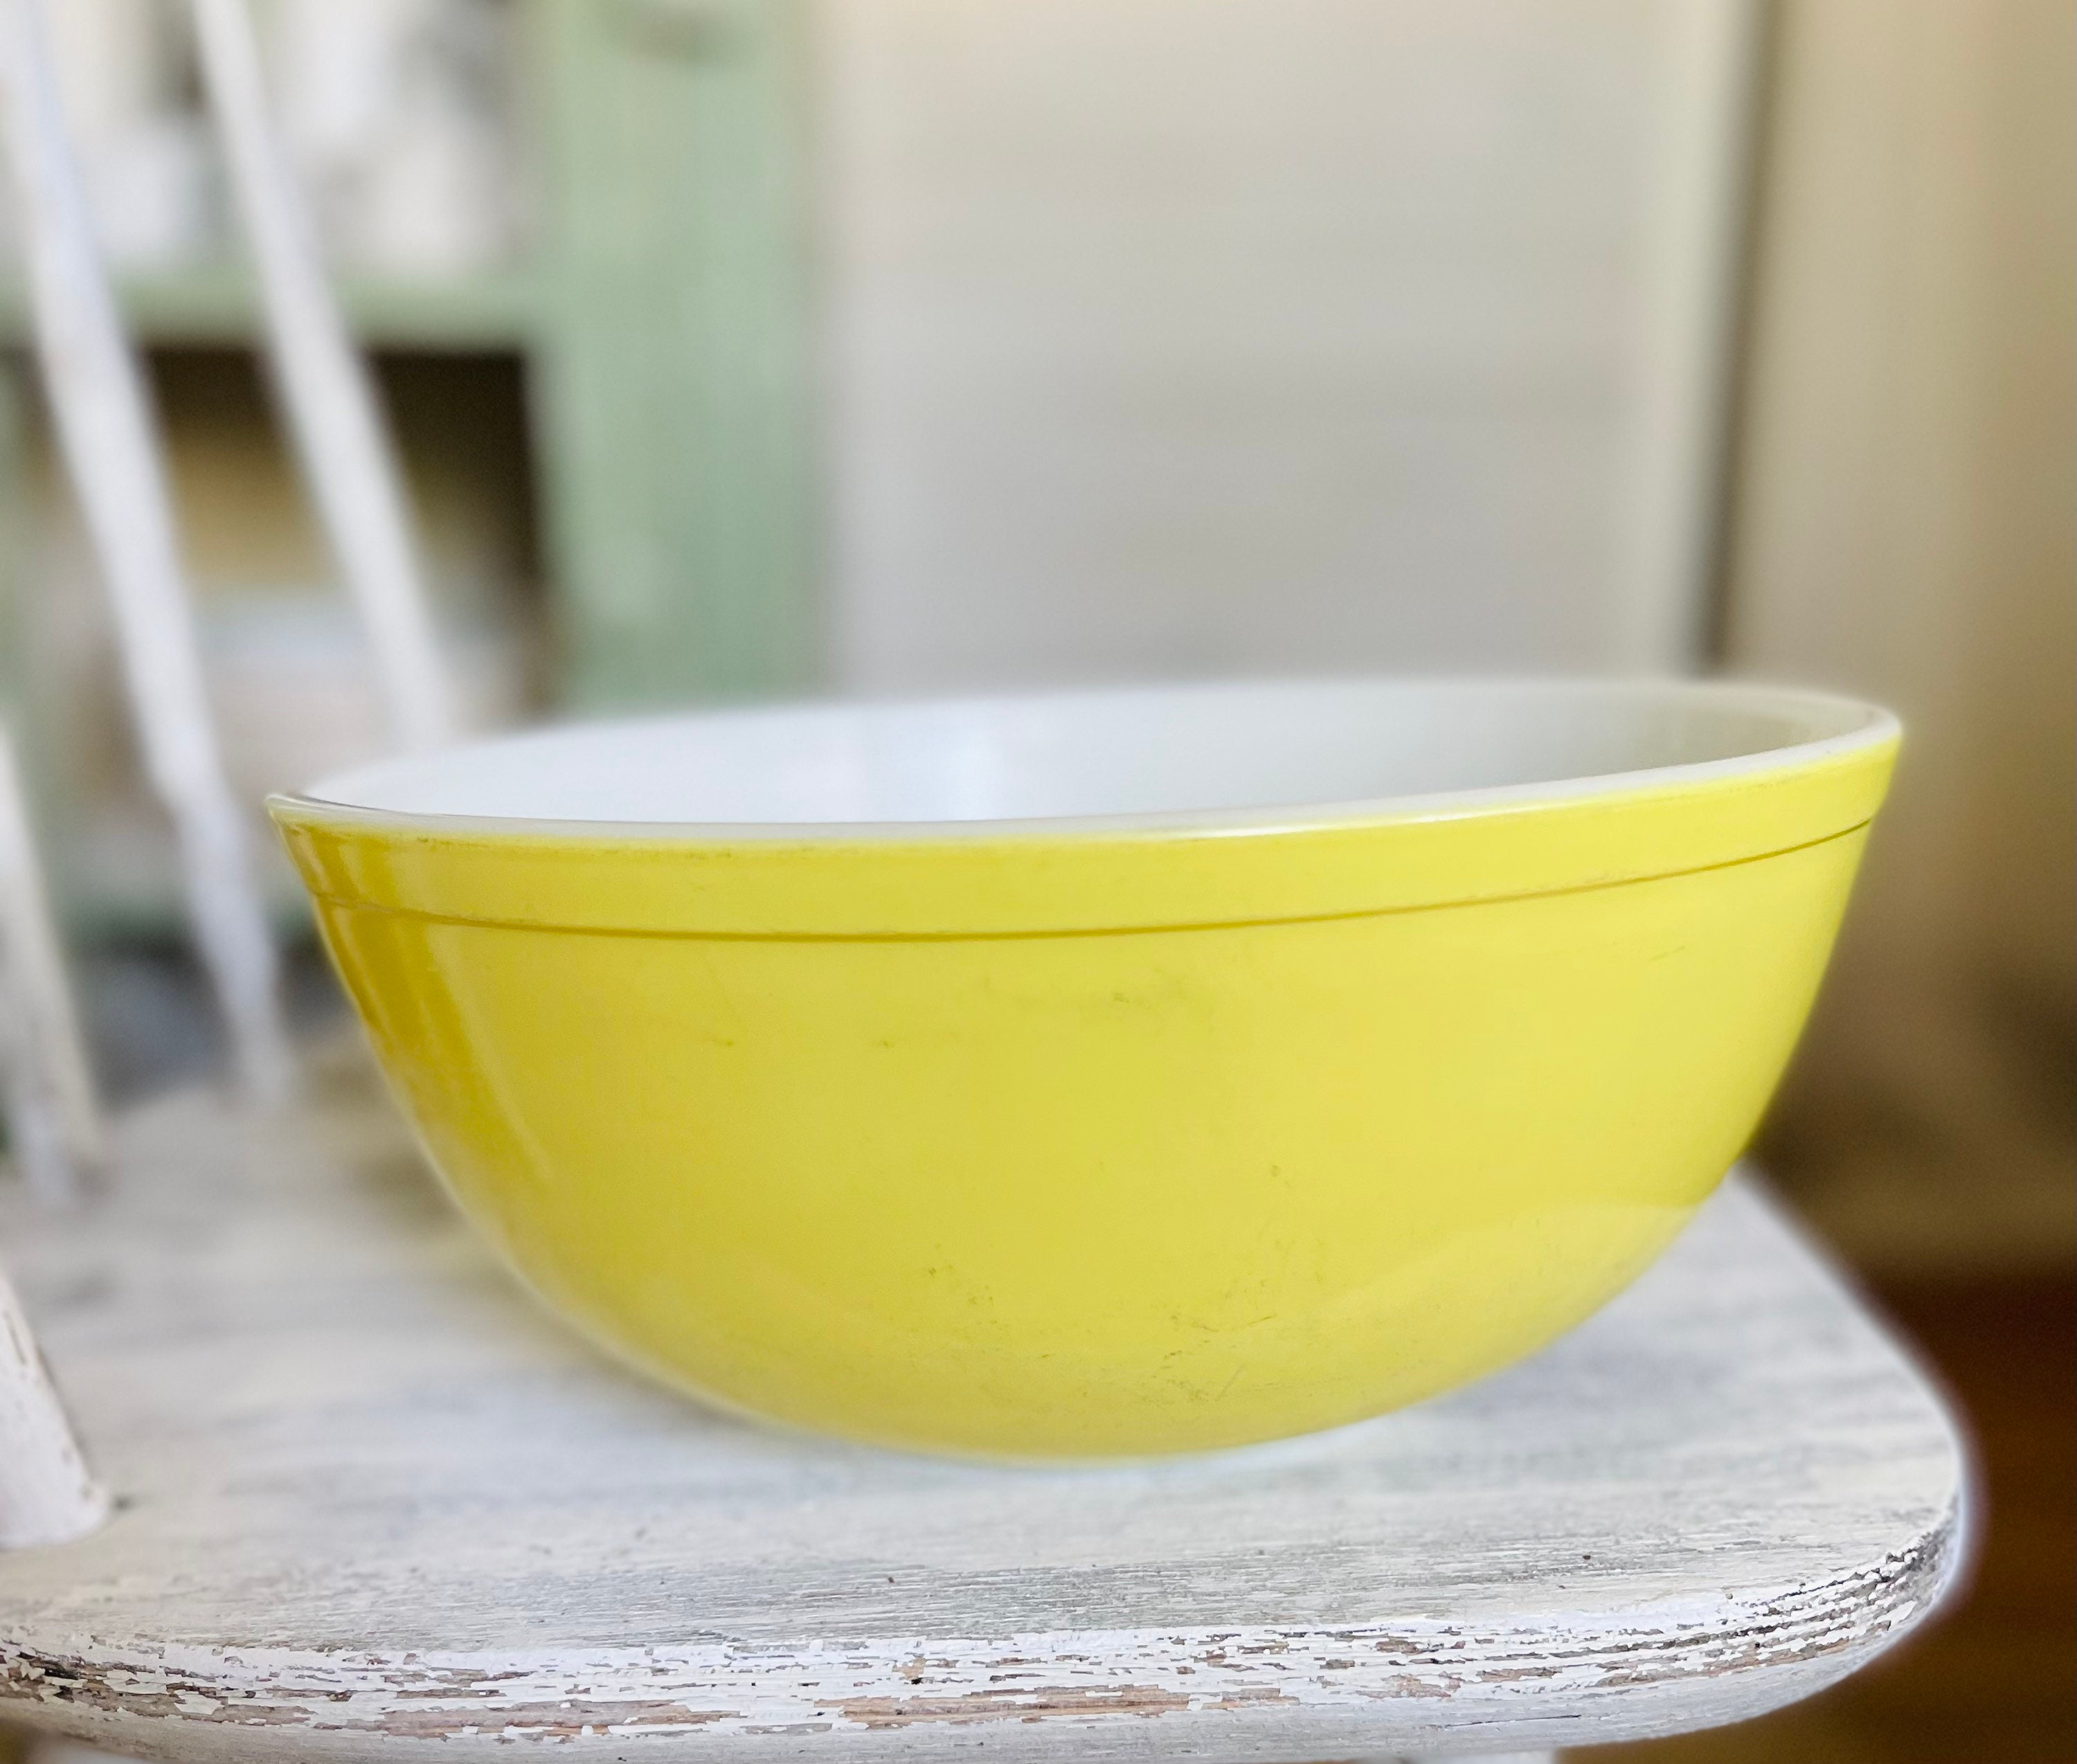 Large yellow pyrex bowl